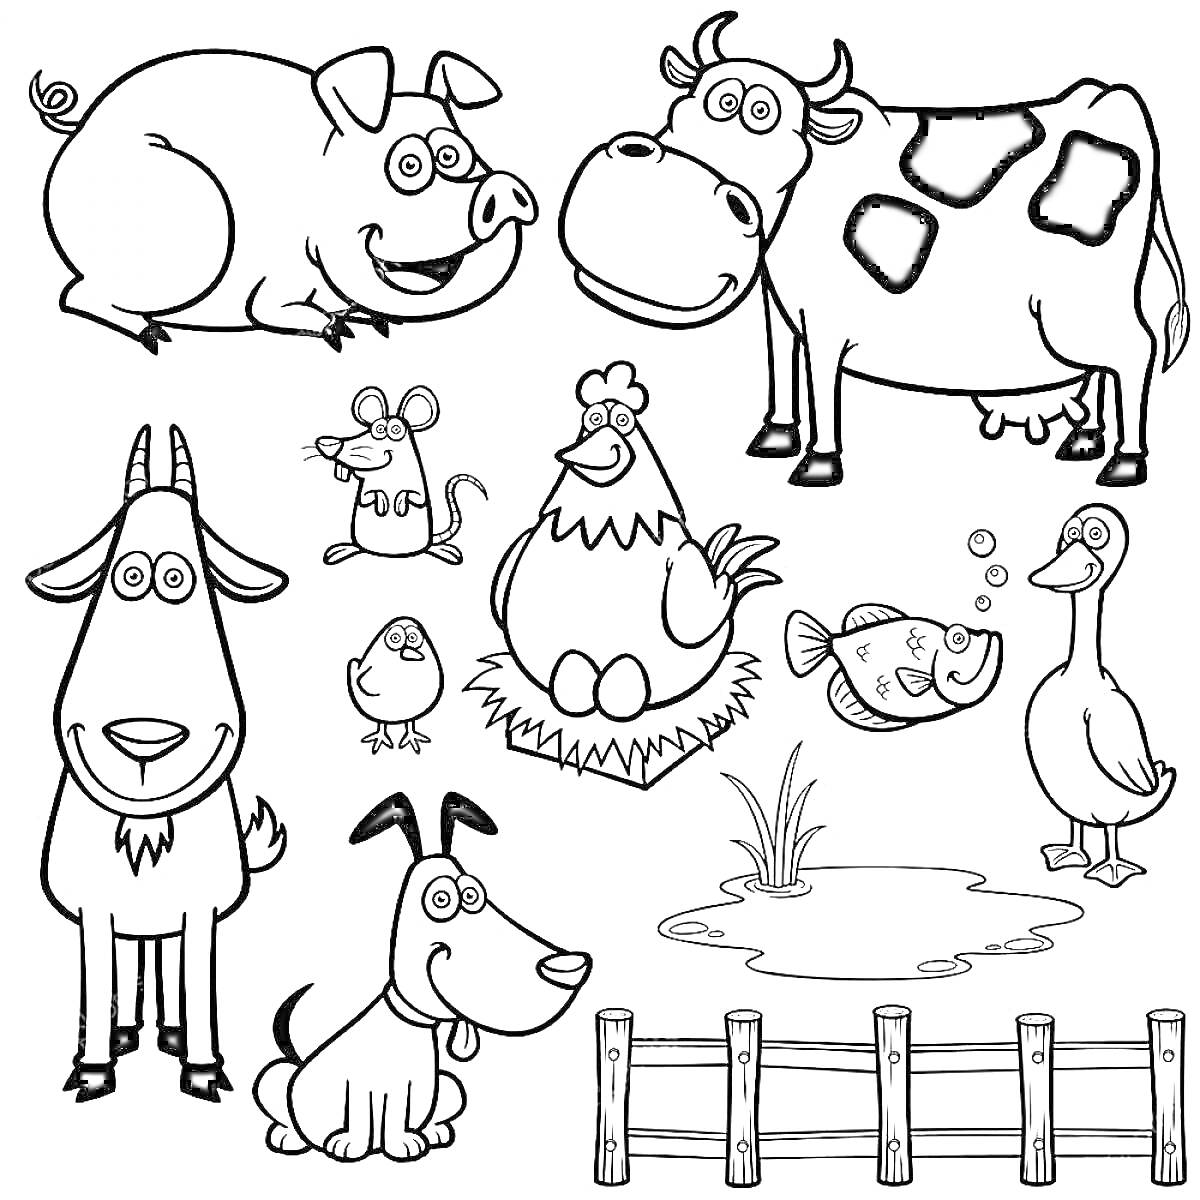 Раскраска Животные на ферме: свинья, корова, коза, петух, цыпленок, мышка, собака, рыба, утка, лужа, деревянный забор